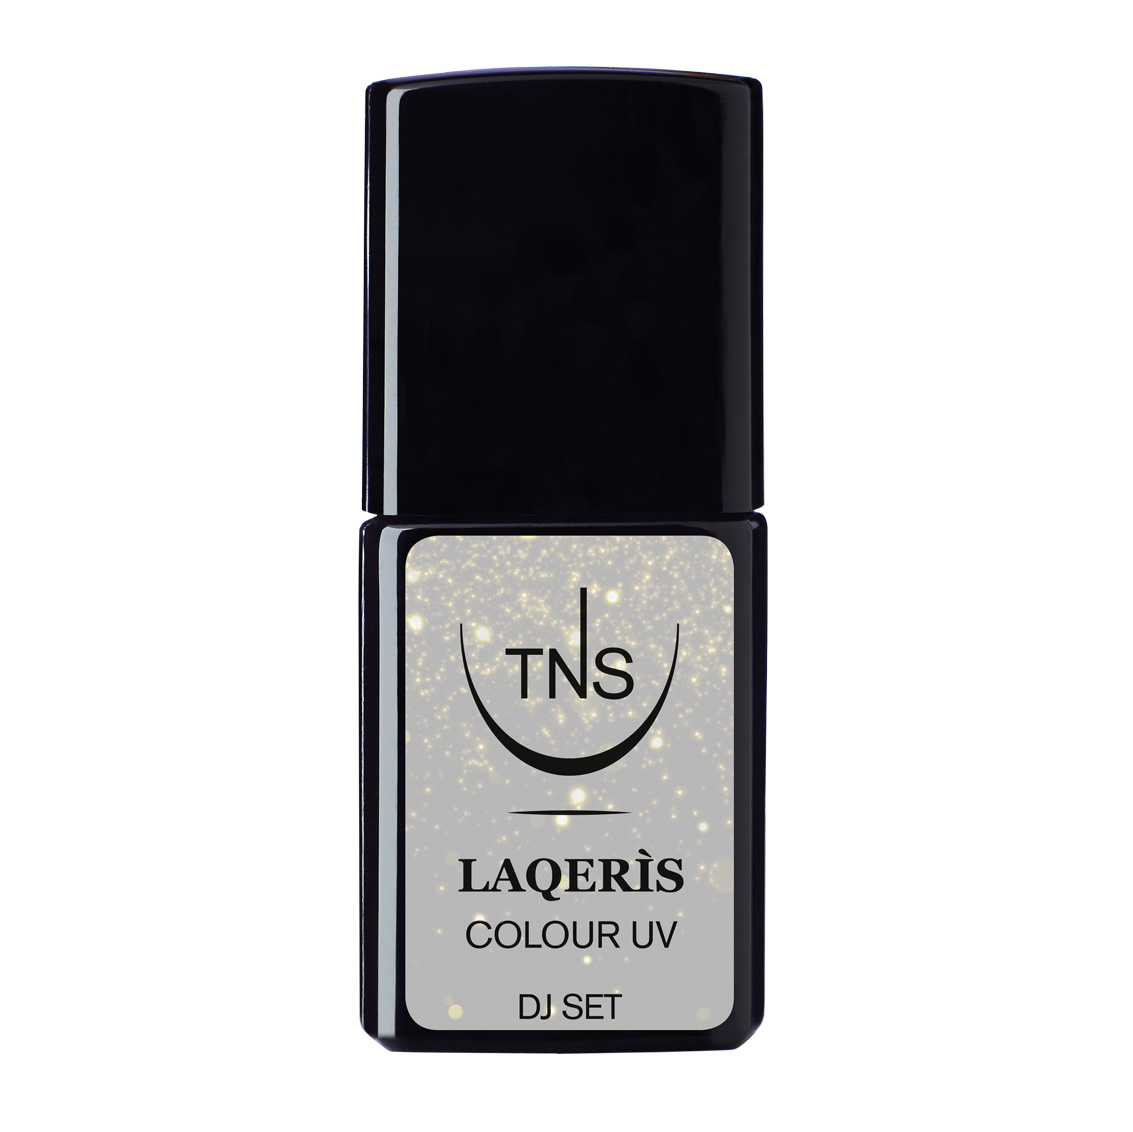 Semi-permanent nail polish light grey metallic Dj Set 10 ml Laqerìs TNS